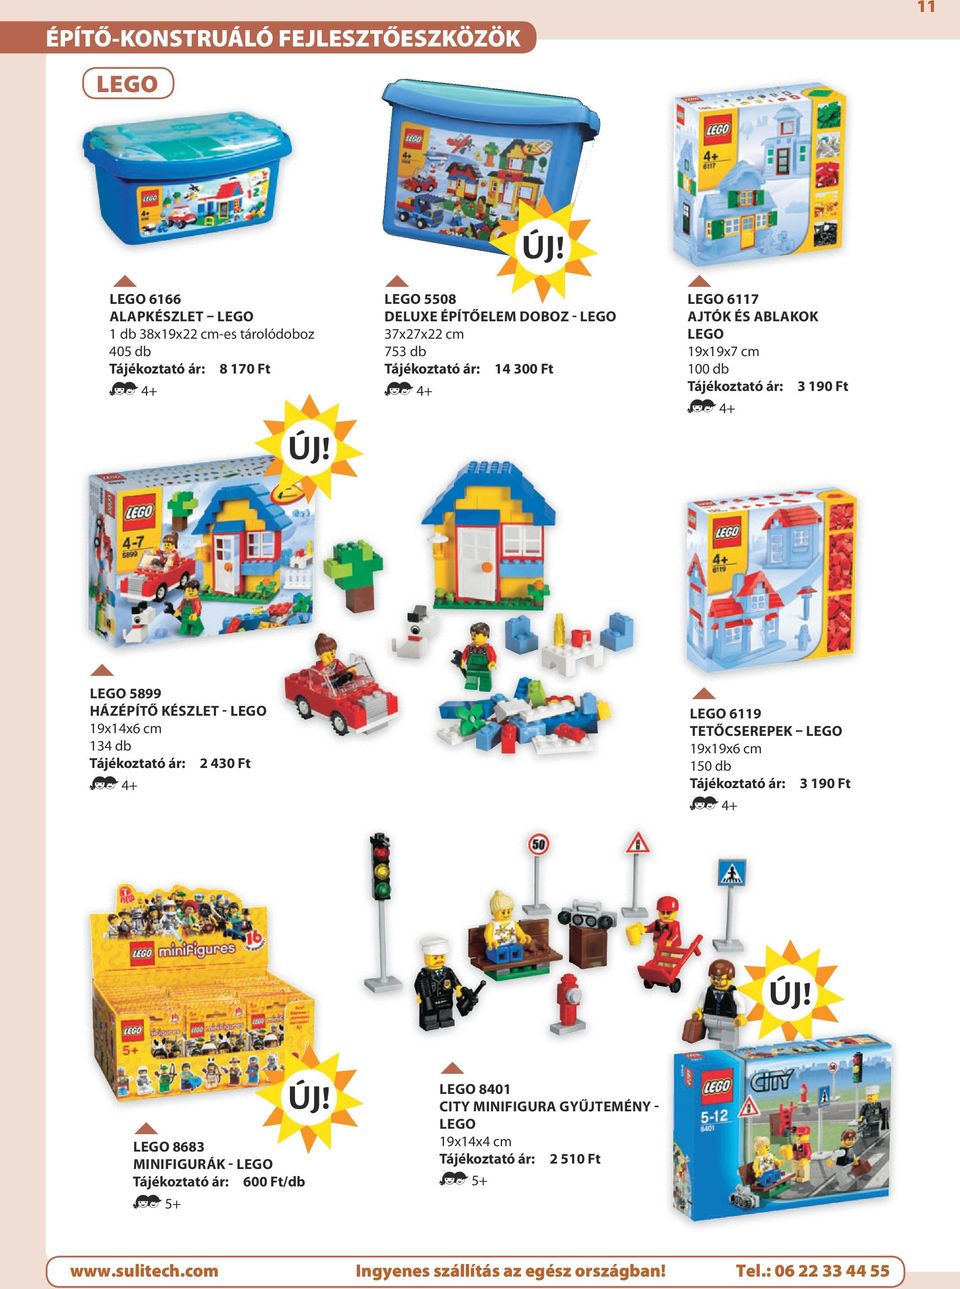 100 db 3 190 Ft LEGO 5899 Házépítő készlet - LEGO 194 cm 134 db 2 430 Ft LEGO 6119 Tetőcserepek Lego 199 cm 150